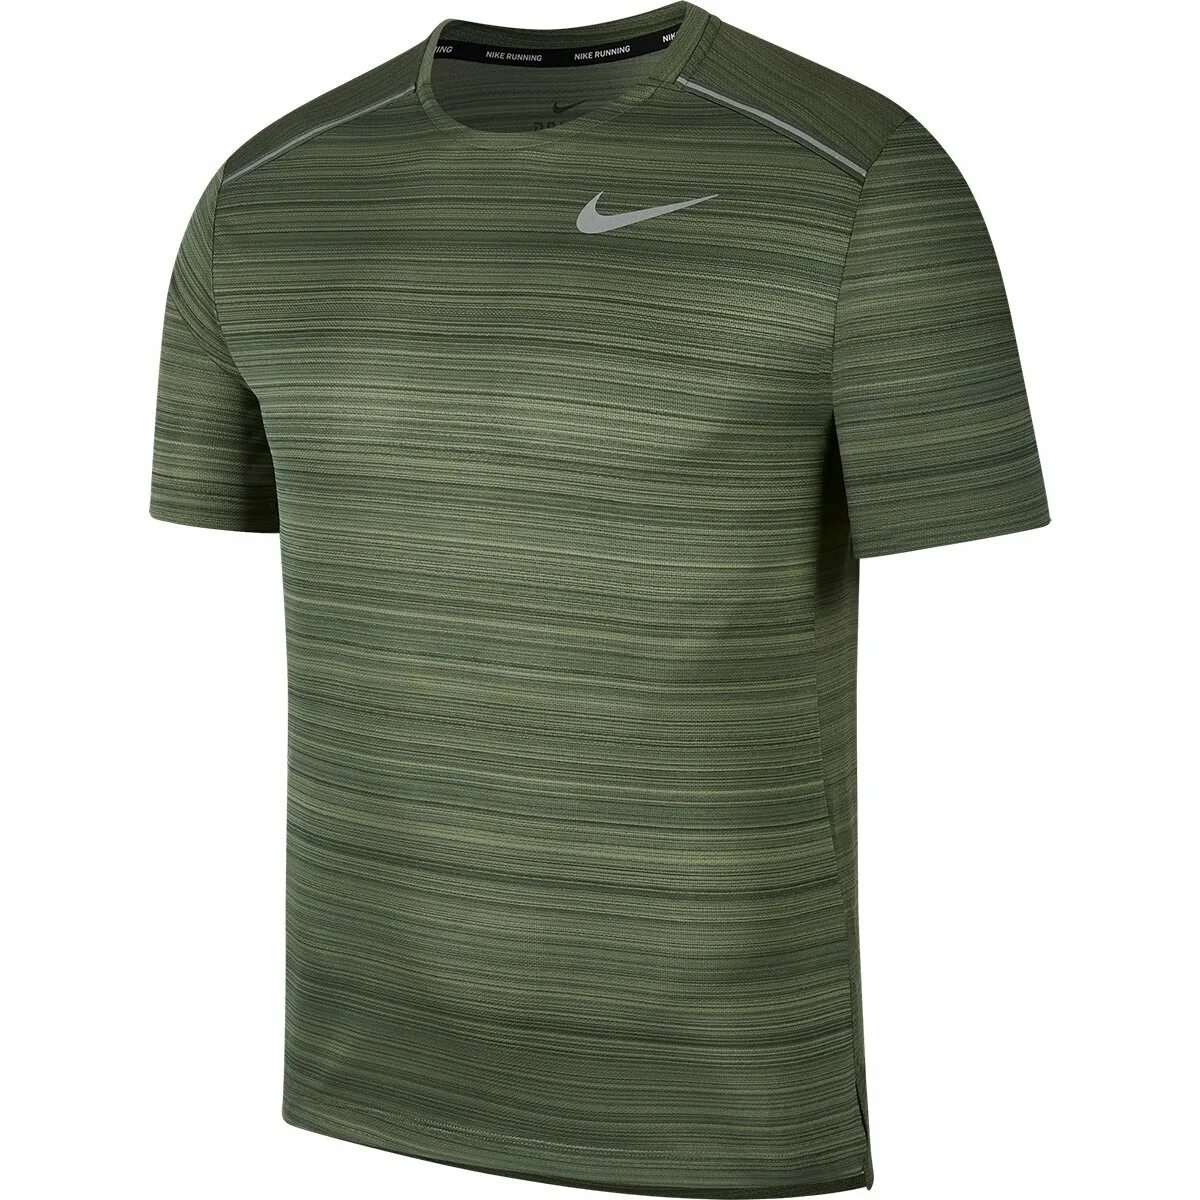 Найк драй. Nike Dri-Fit Miler. Футболка найк драй фит. Топ Nike Dri-Fit. Camiseta Nike Dri-Fit masculina.